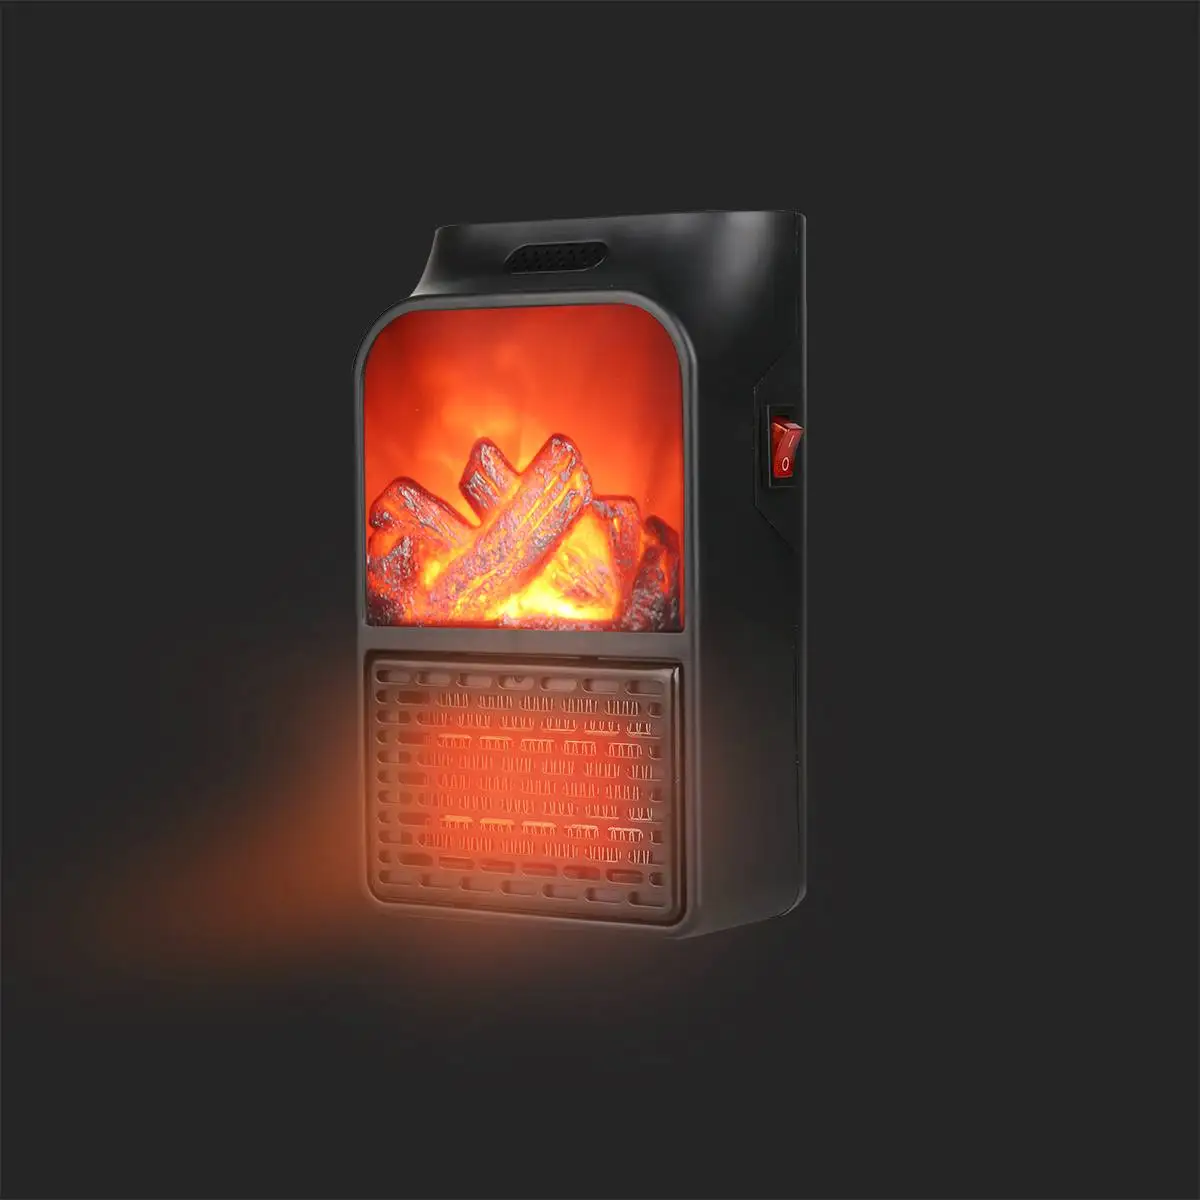 1000 Вт Мини Портативный PTC нагреватель Электрический нагреватель вентилятор камин пламя цифровой дисплей-Таймер Пульт дистанционного управления Бытовая зимняя нагревательная машина